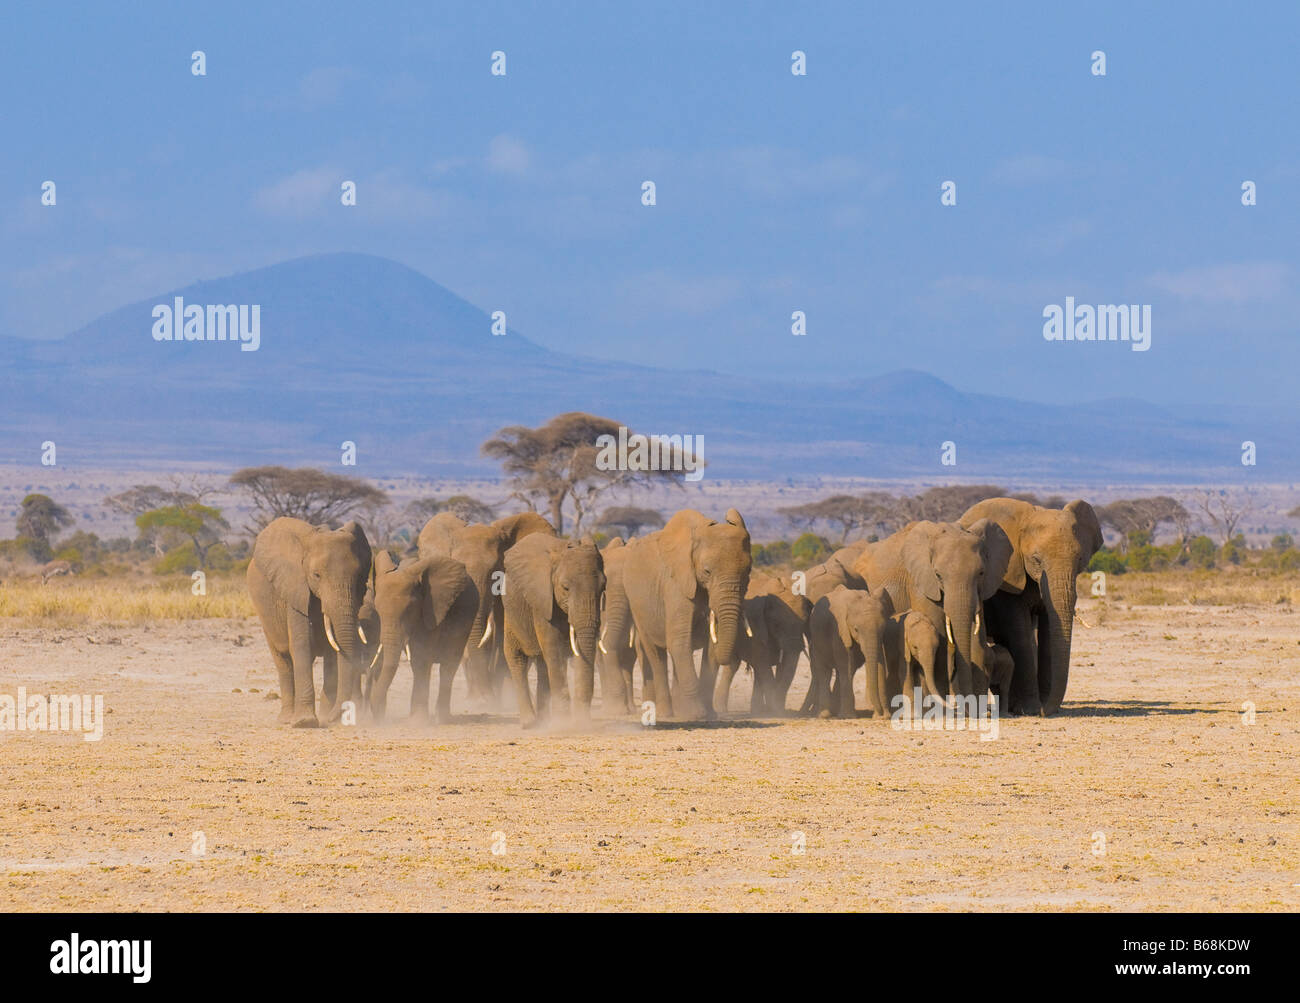 Les éléphants dans le parc national Amboseli au Kenya Banque D'Images